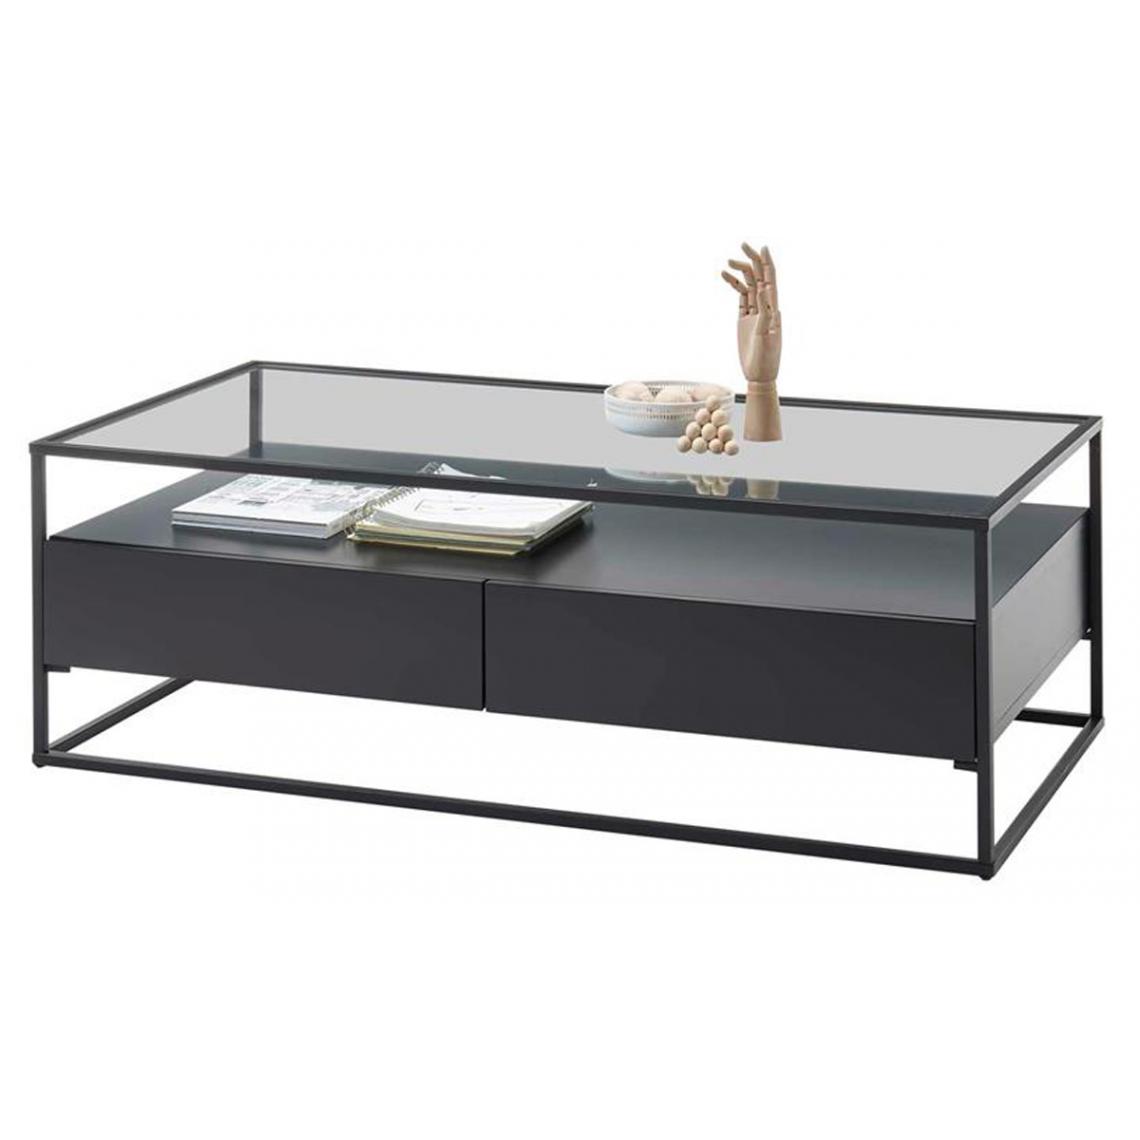 Pegane - Table basse avec rangements en bois et métal coloris noir mat - L.120 x H.40 x P.60 cm - Tables basses